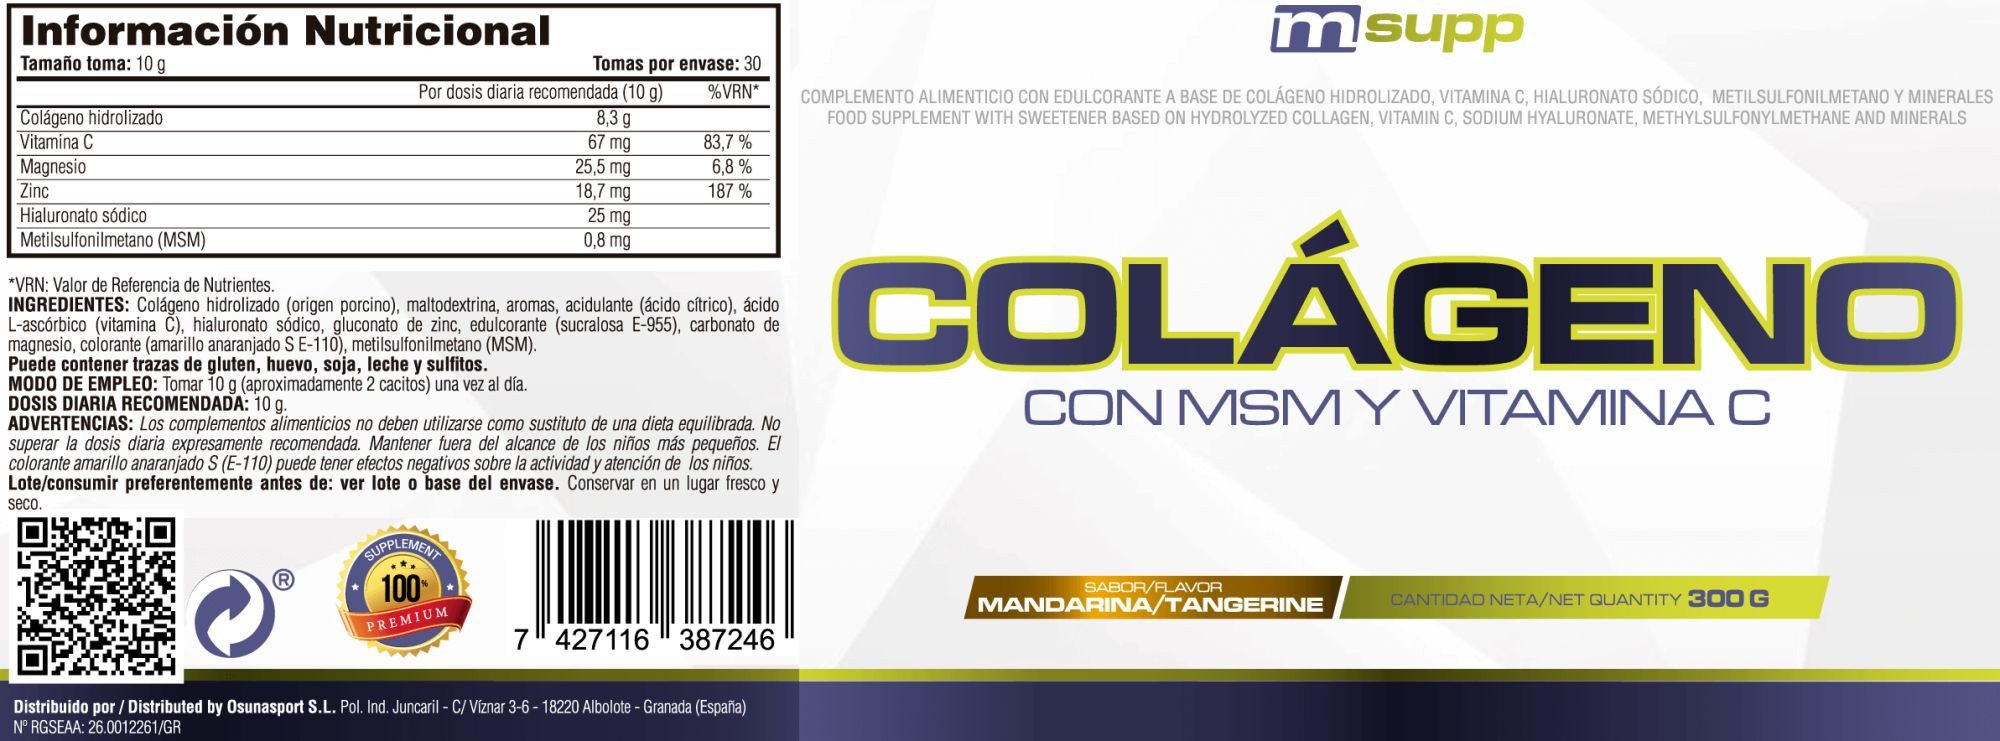 Colágeno Con Msm Y Vitamina C - 300g De Mm Supplements Sabor Mandarina